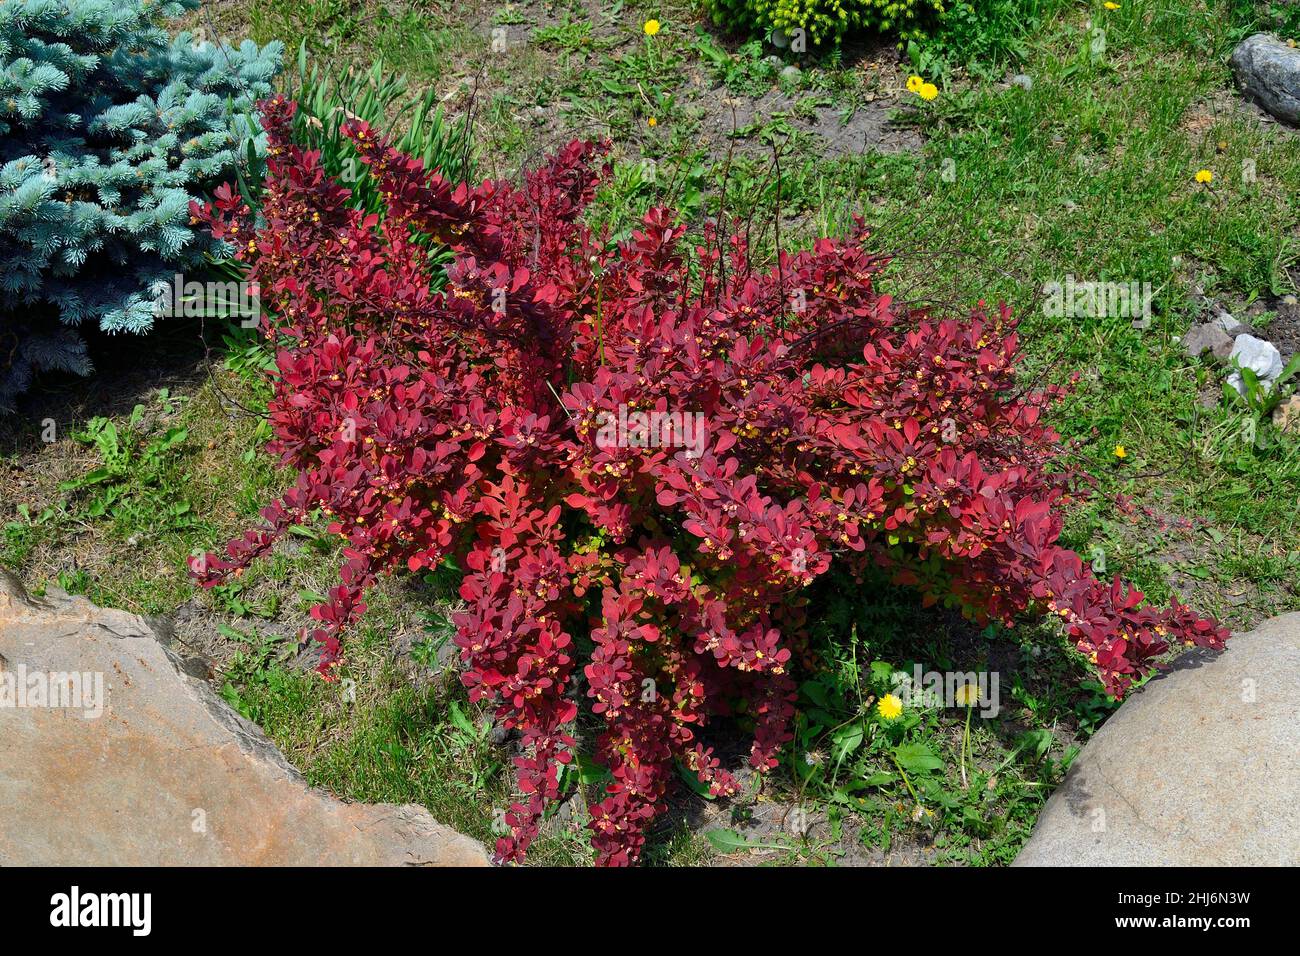 Buisson de baryère en fleur Berberis Thunbergii, variété tapis rouge avec feuillage rouge vif et fleurs jaunes dans le jardin de printemps parmi les pierres.Décoration l Banque D'Images